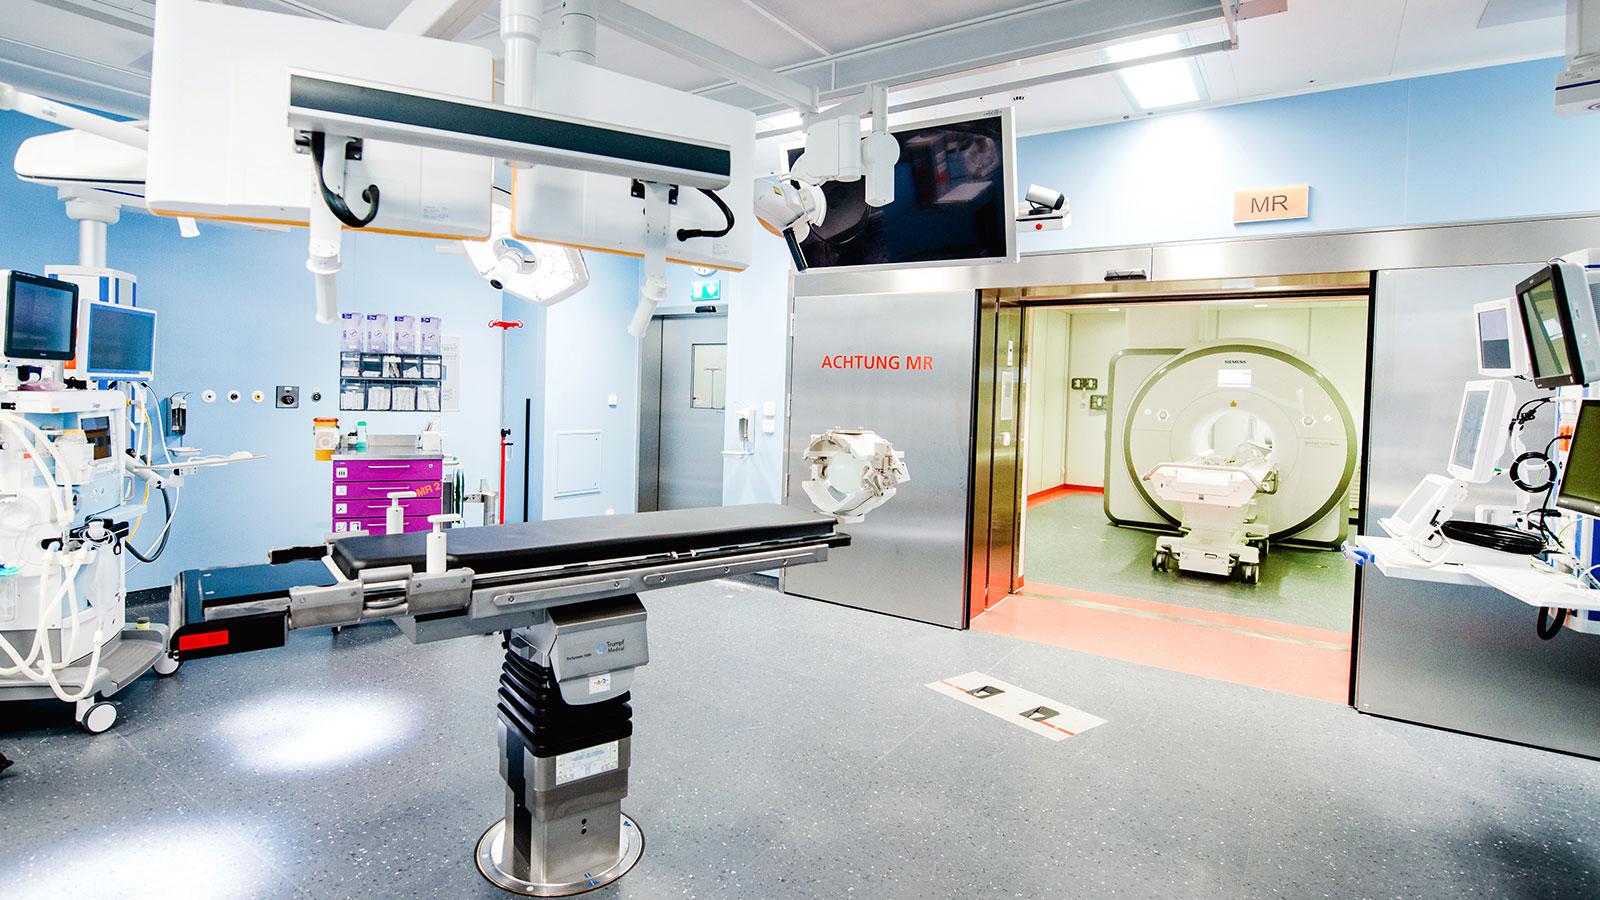 Foto des Operationssaals mit MRI-Anlage im Hintergrund